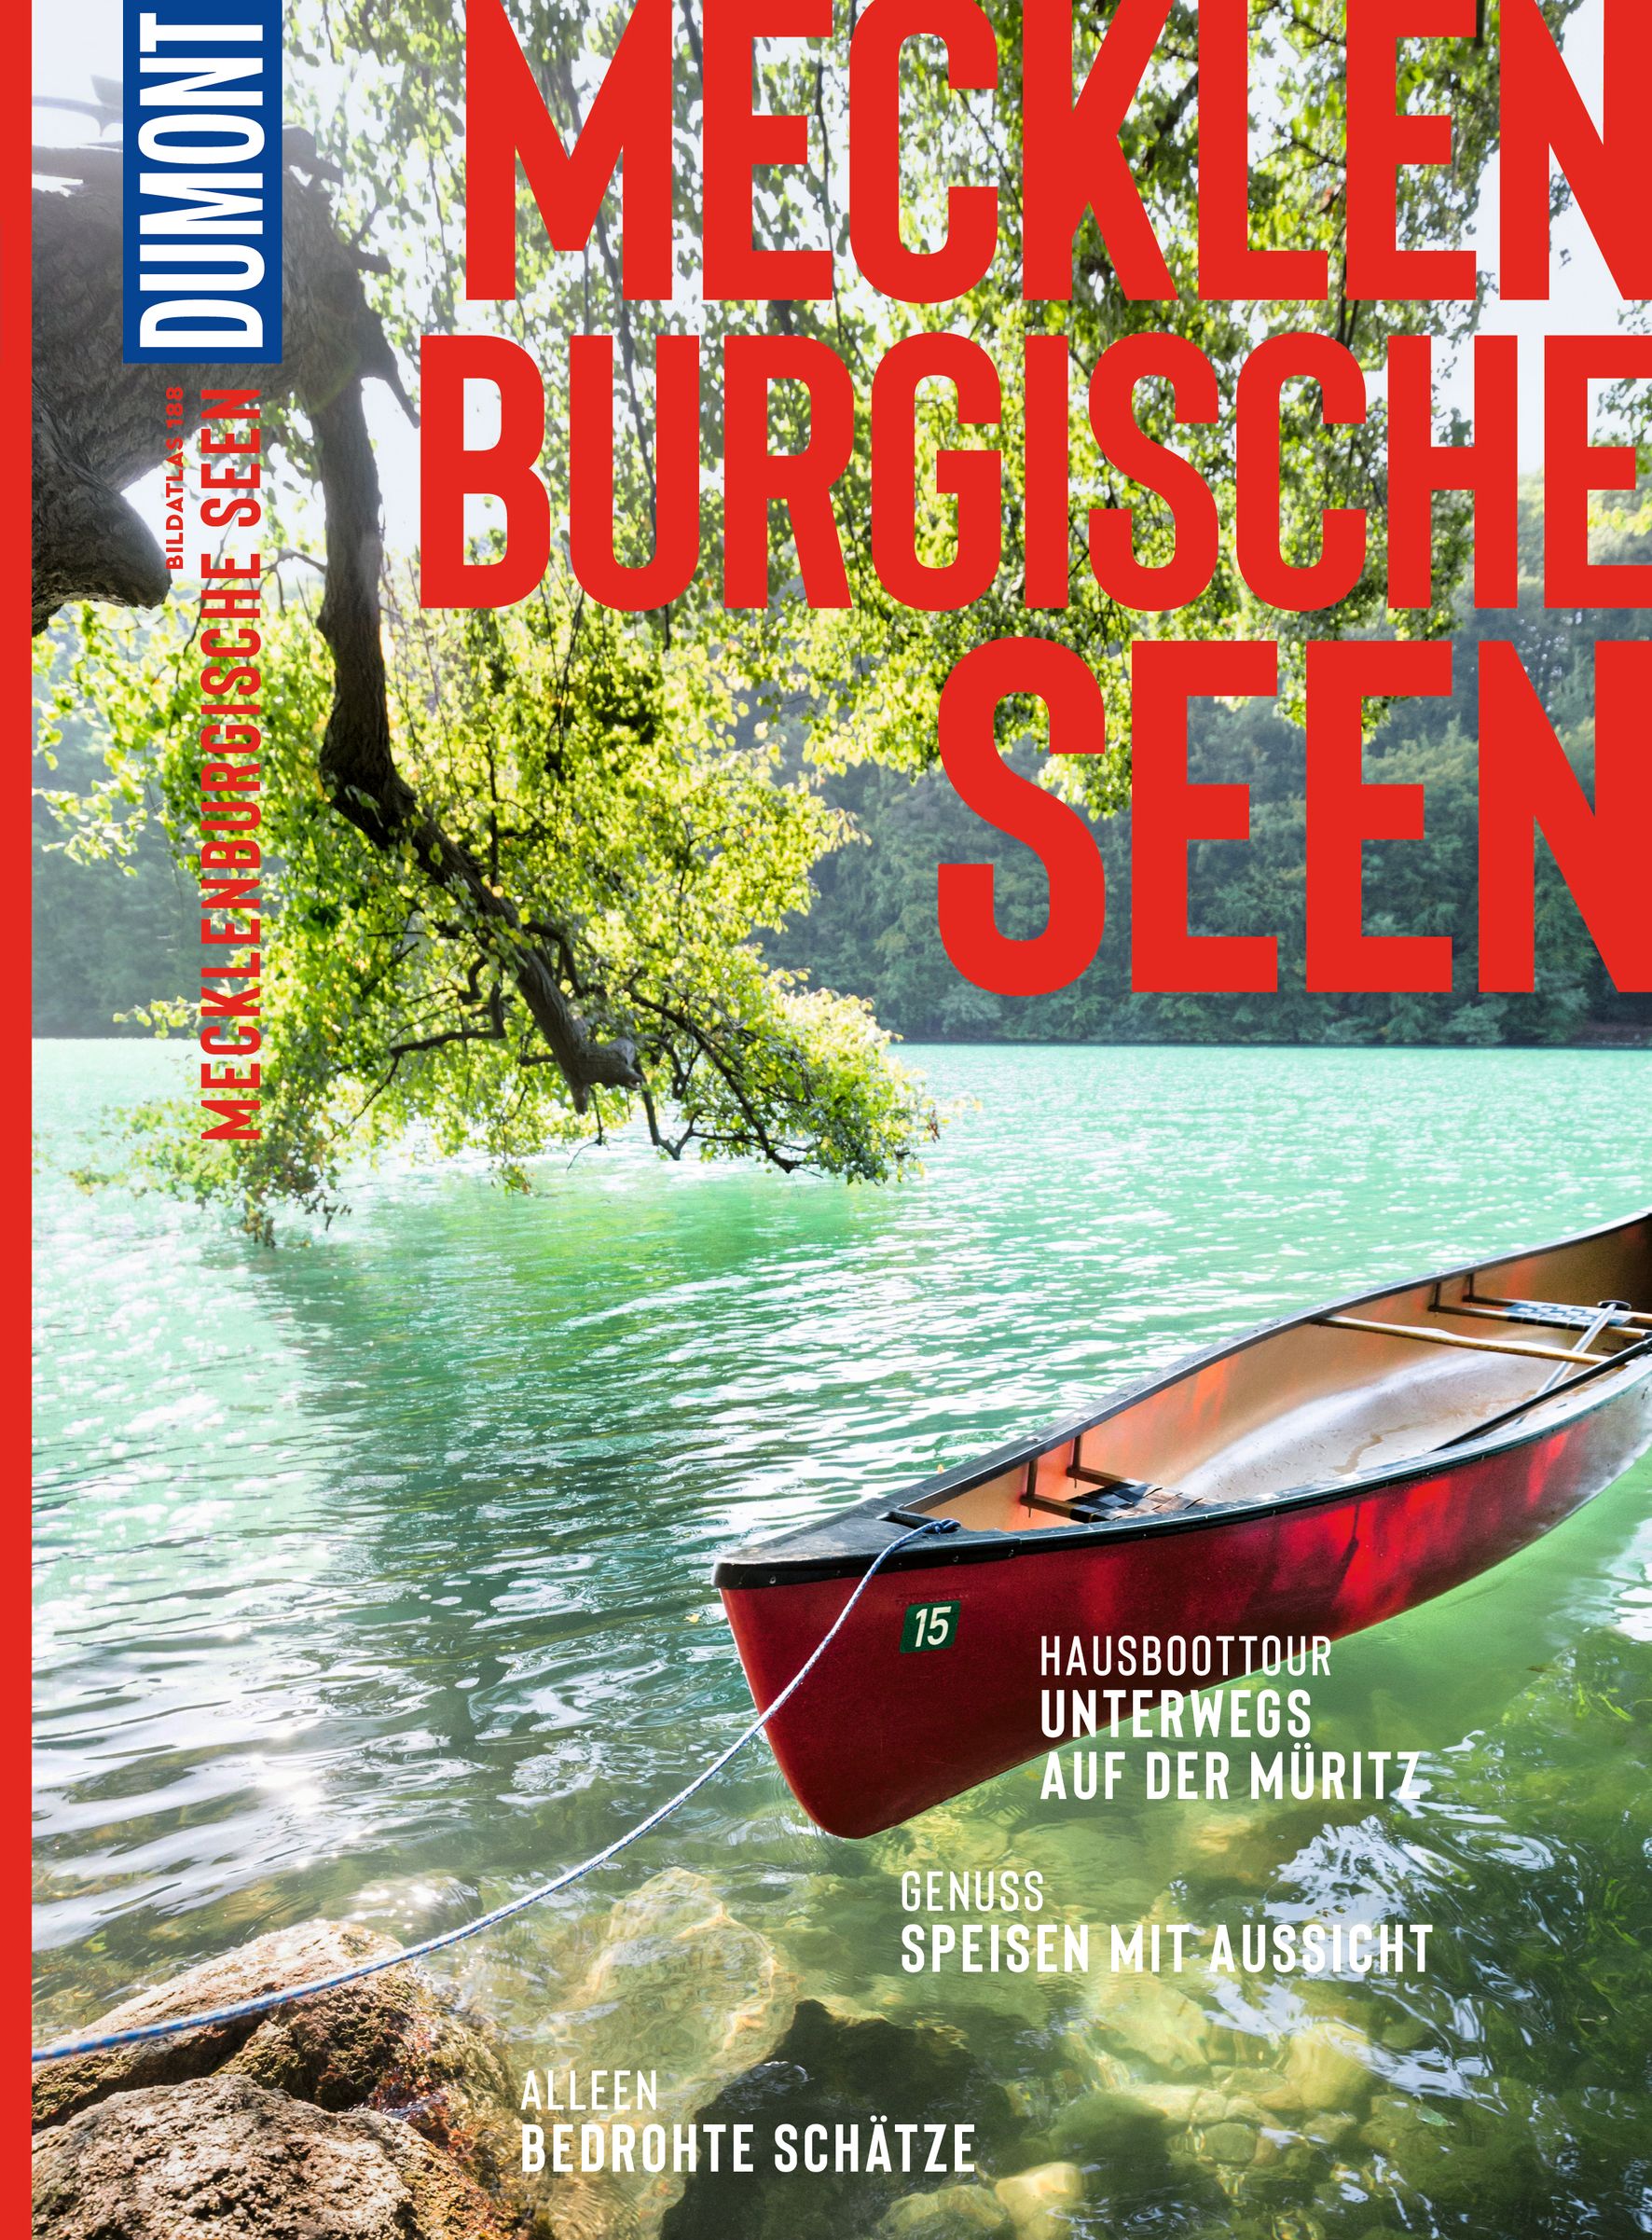 MAIRDUMONT Mecklenburgische Seen (eBook)